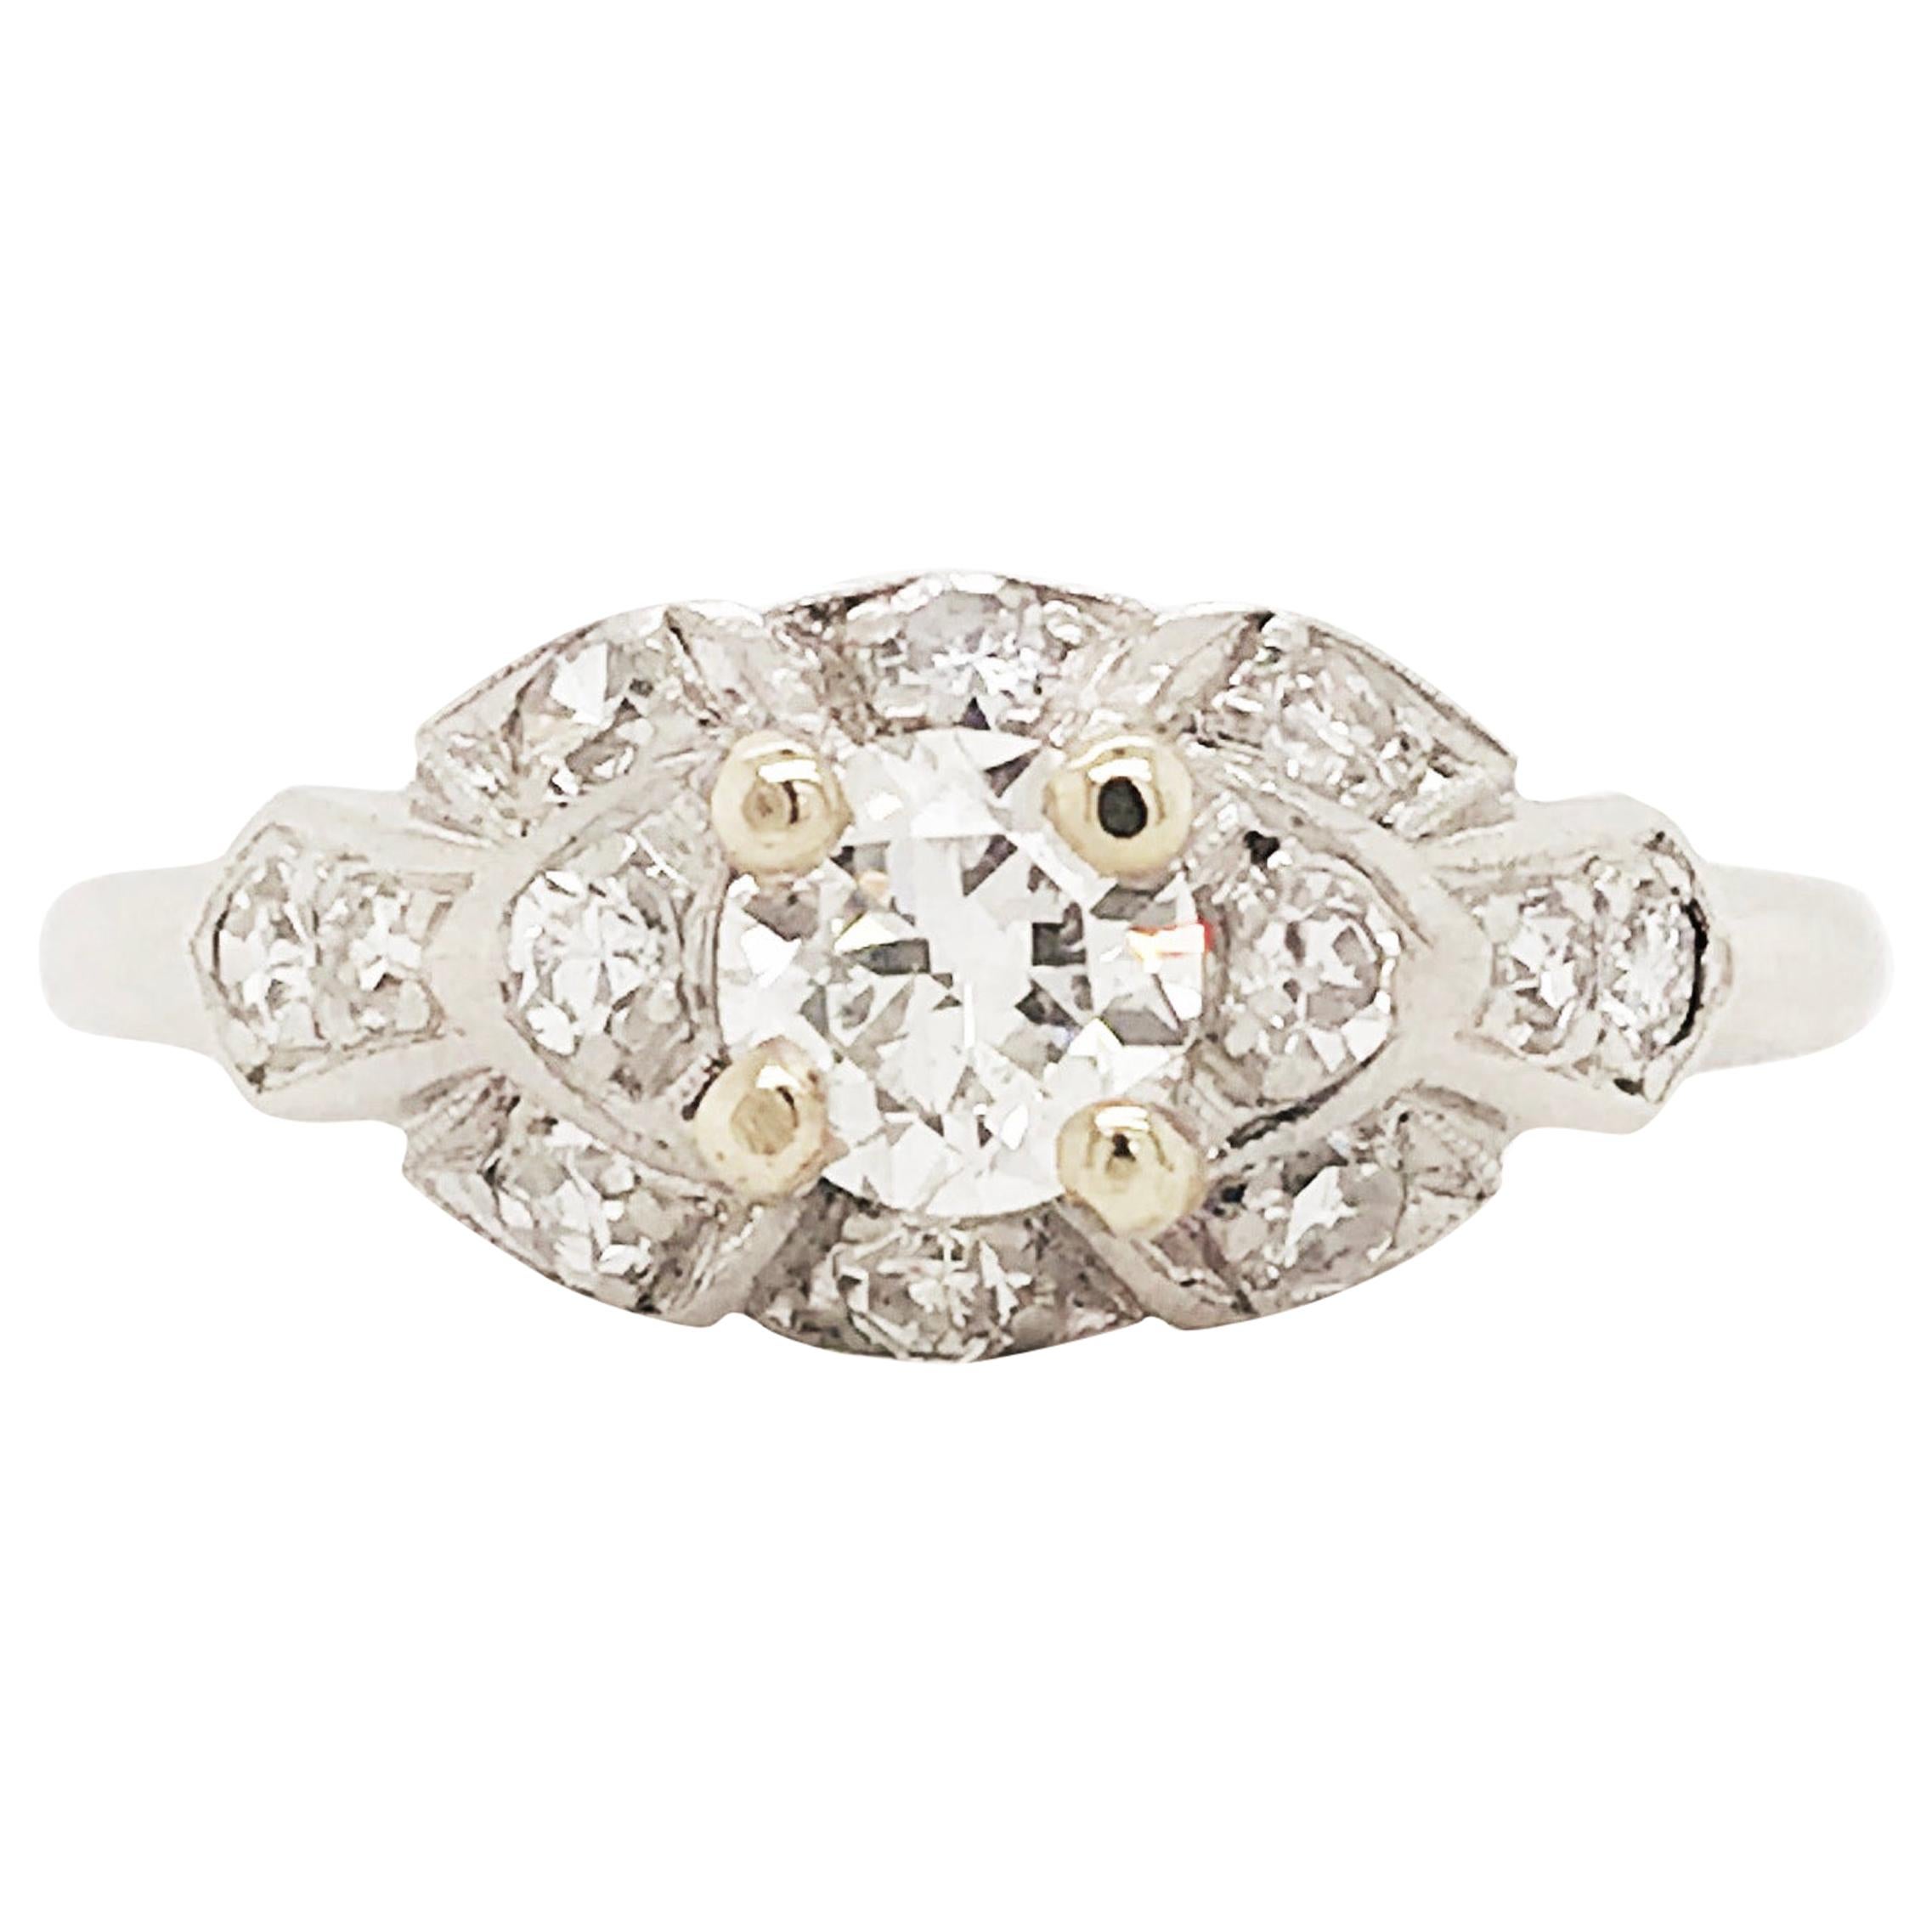 Old European Cut Diamond 1930s Engagement Ring Platinum 1/2 Carat Vintage Ring